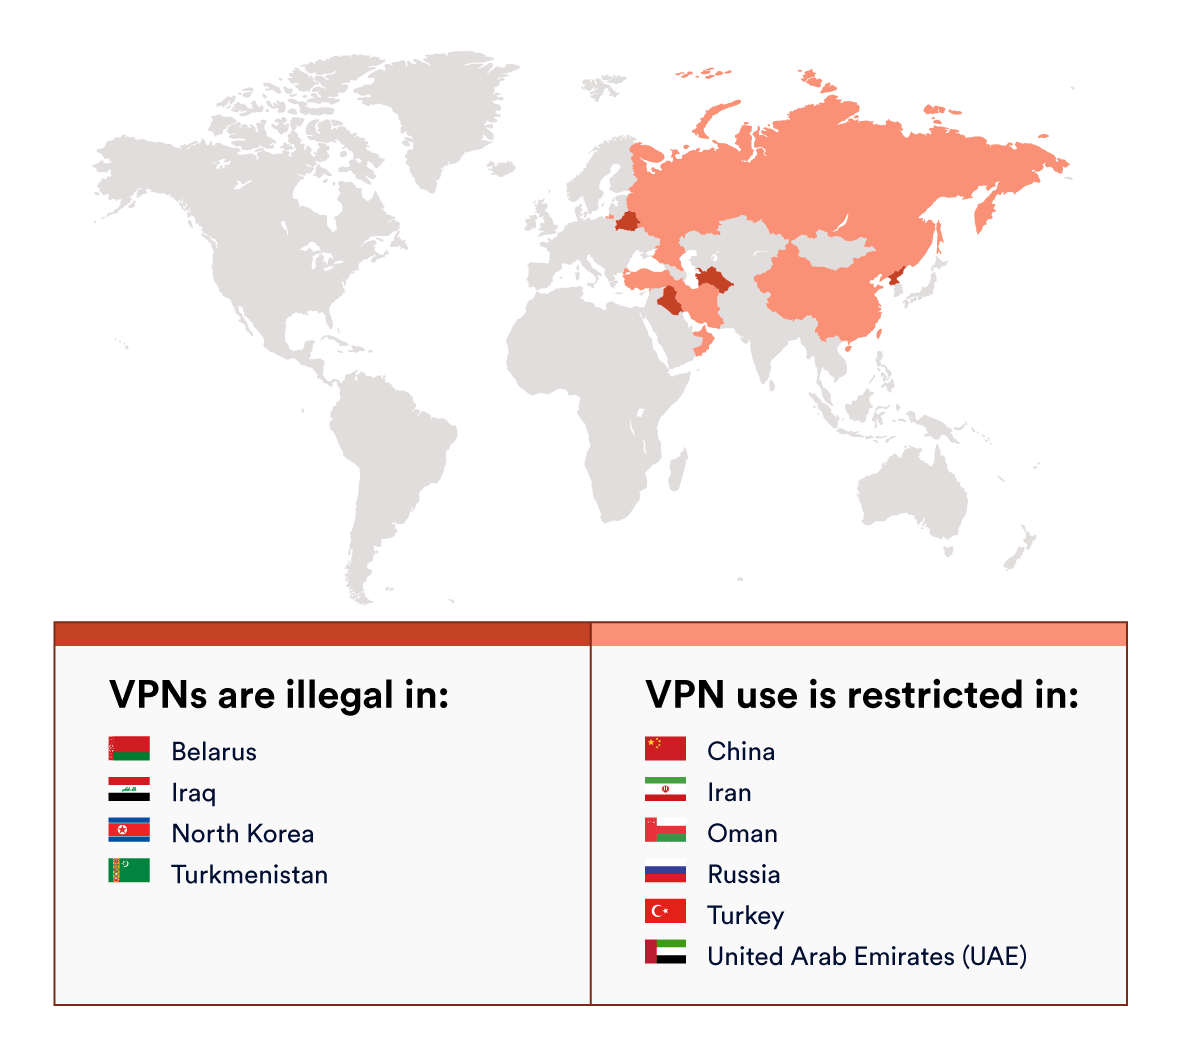 Les pays où les VPN sont illégaux